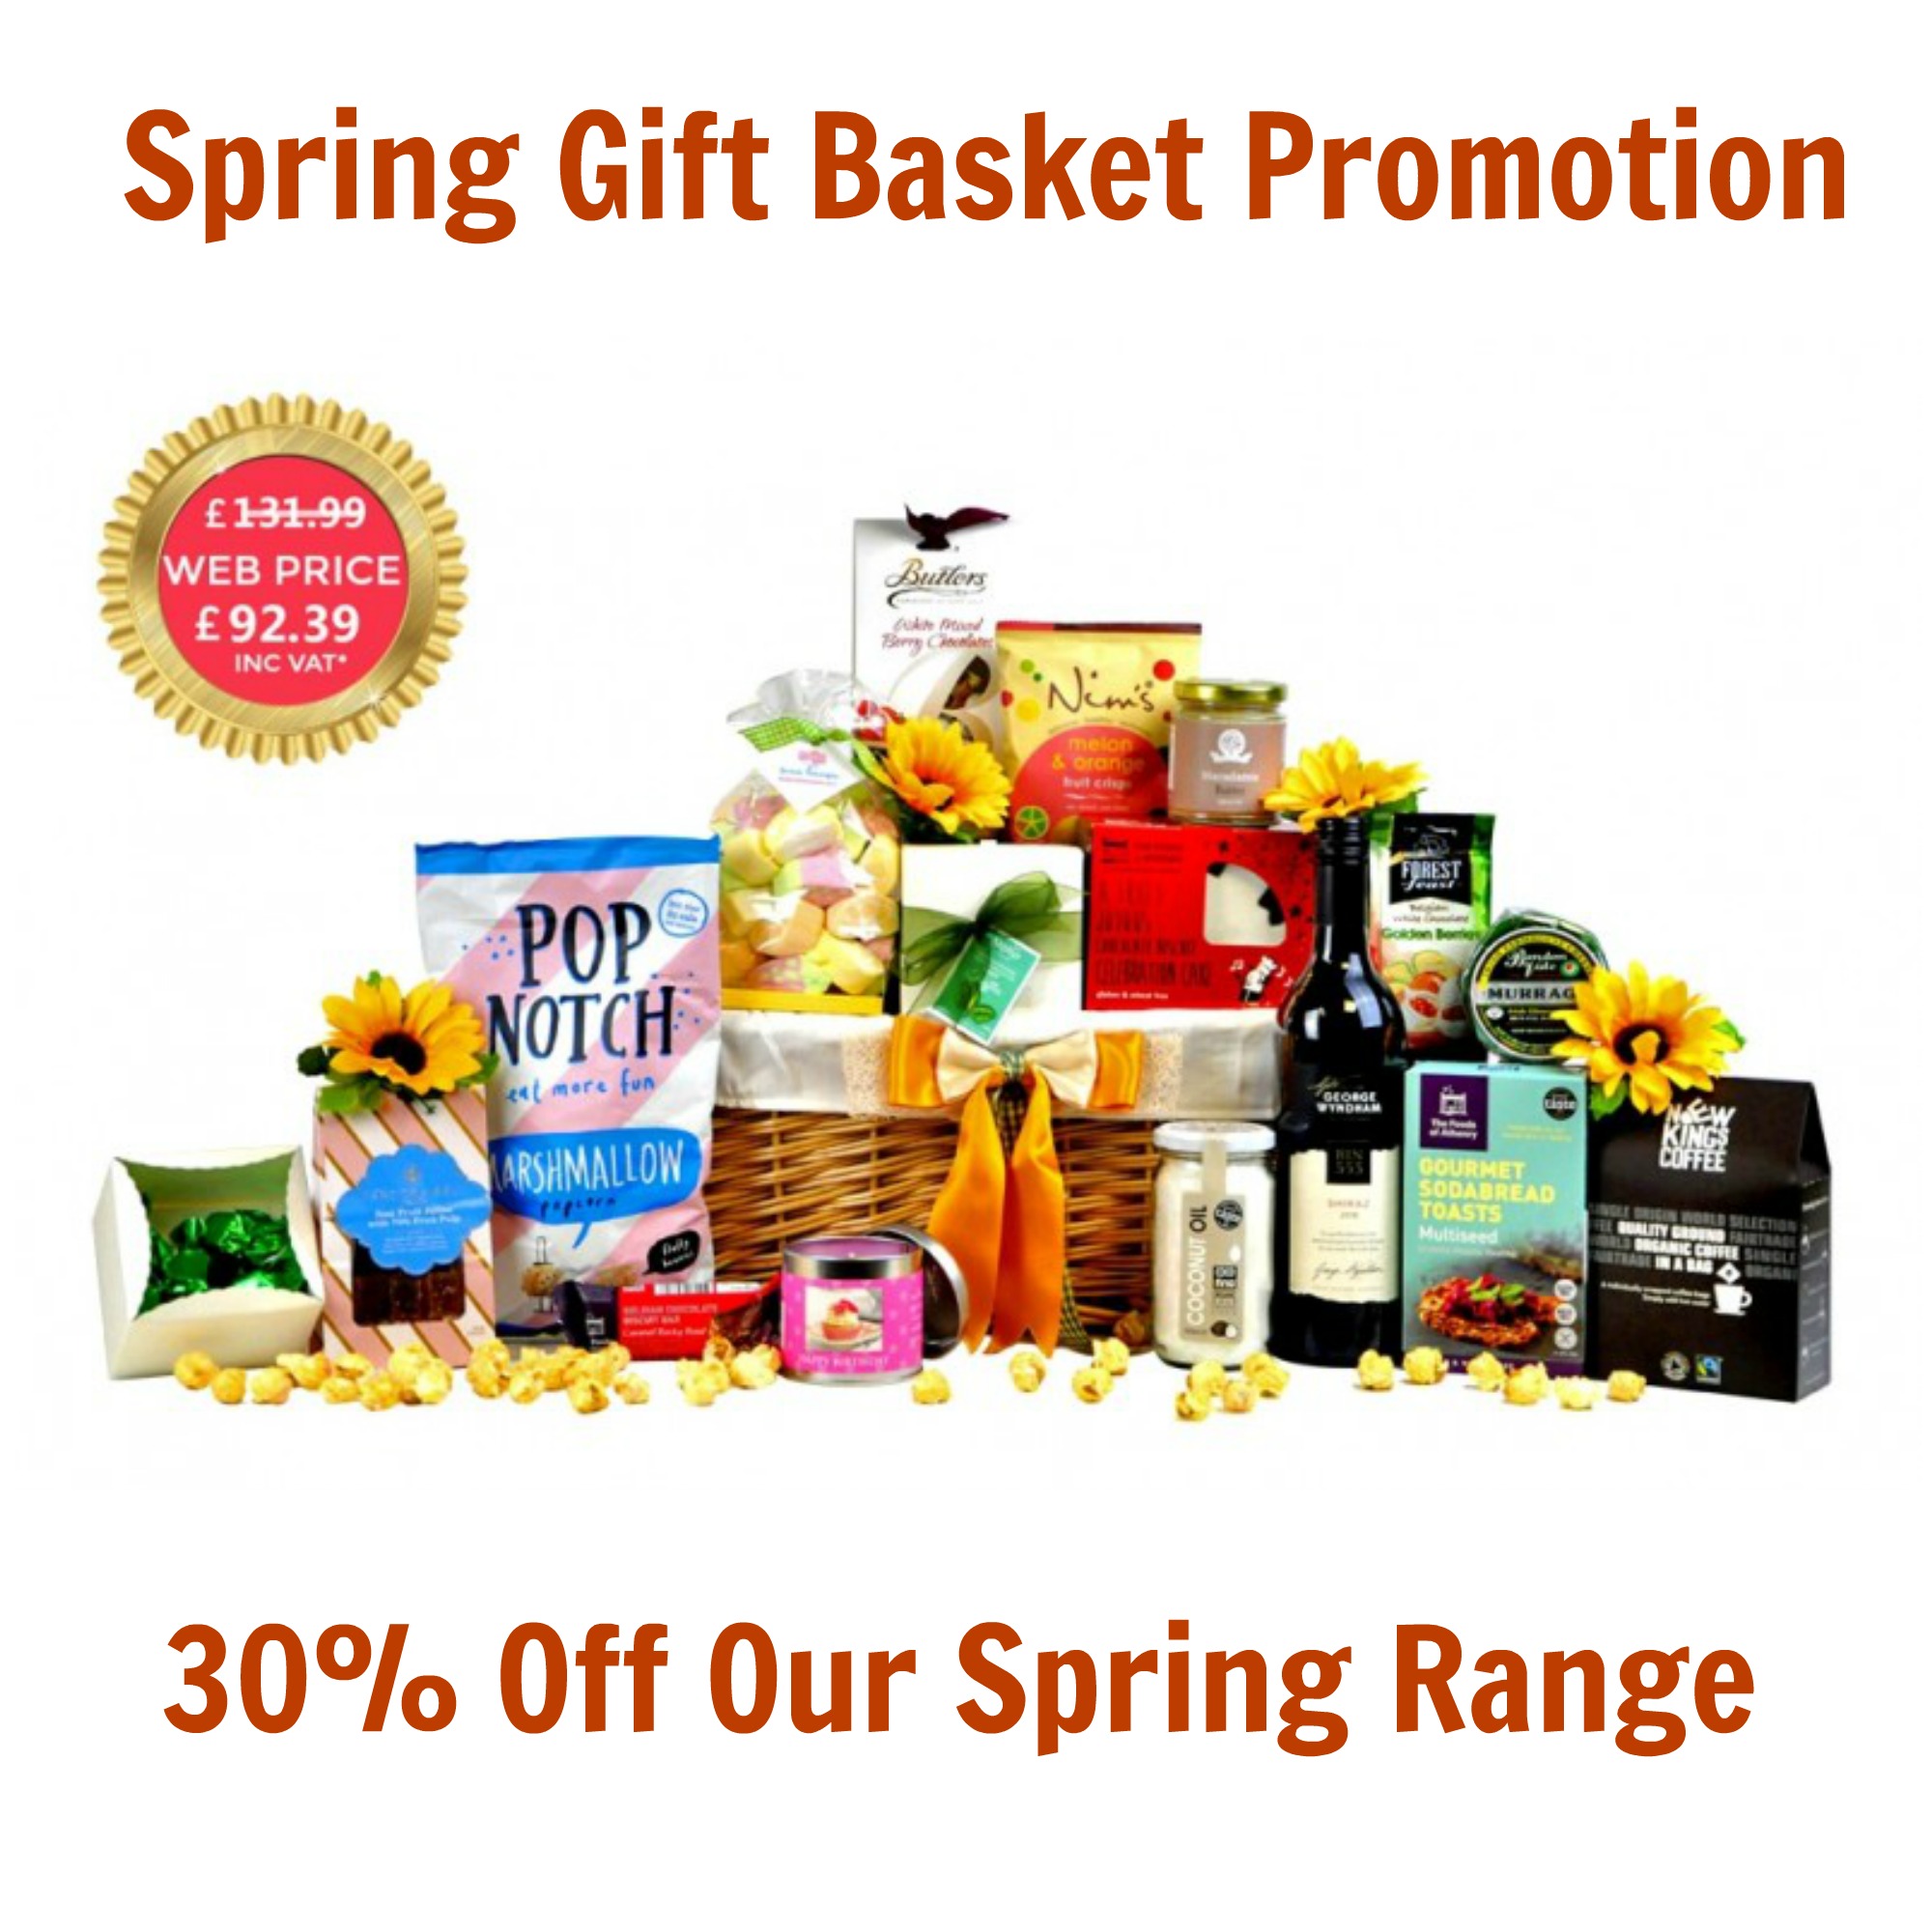 Spring Gift Basket: Special Offer 30% Off